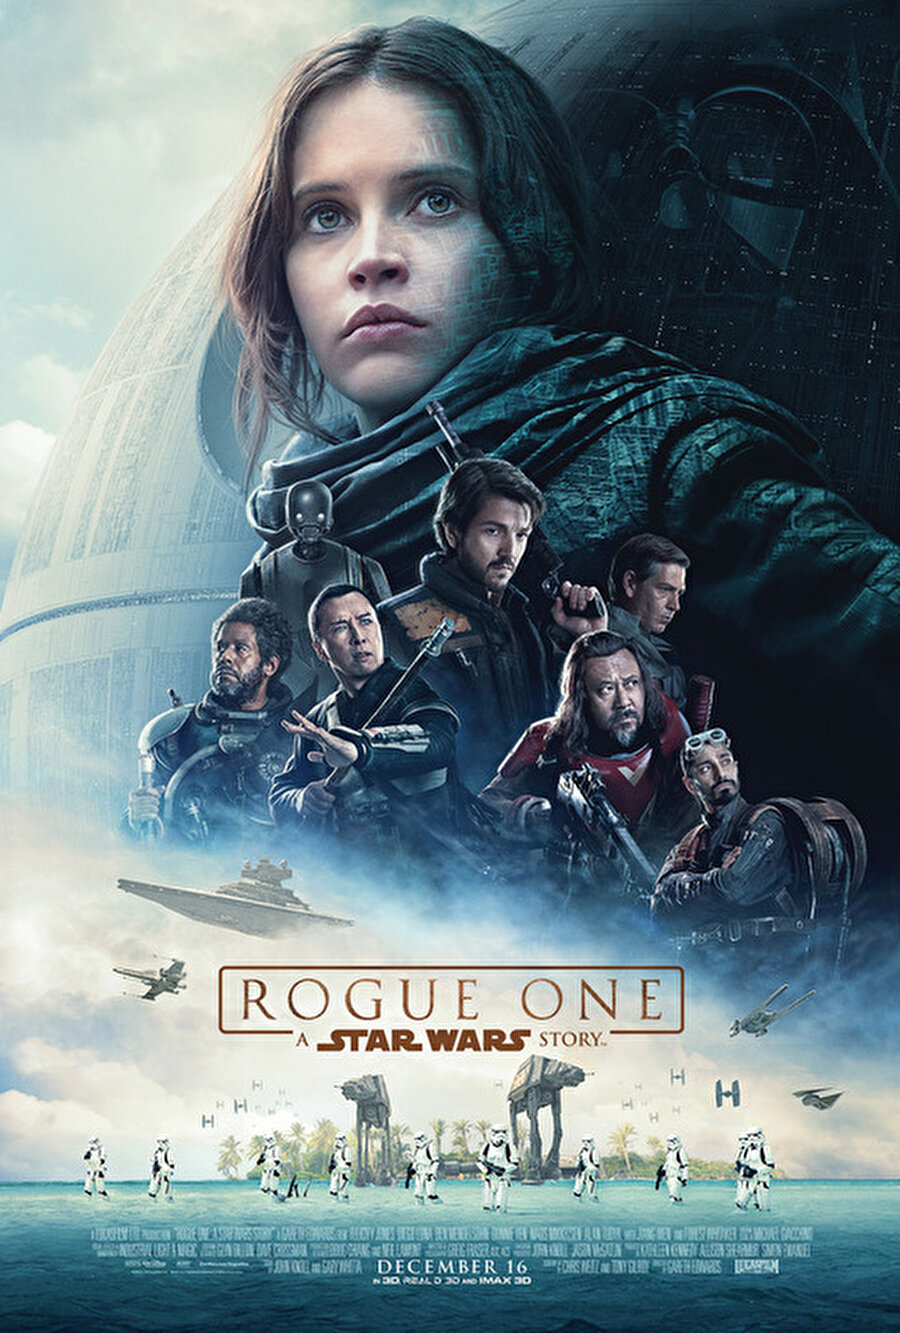 Rogue One
Star Wars evreninde farklı bir hikaye anlatacak Rogue One, Bir Star Wars Hikayesi.